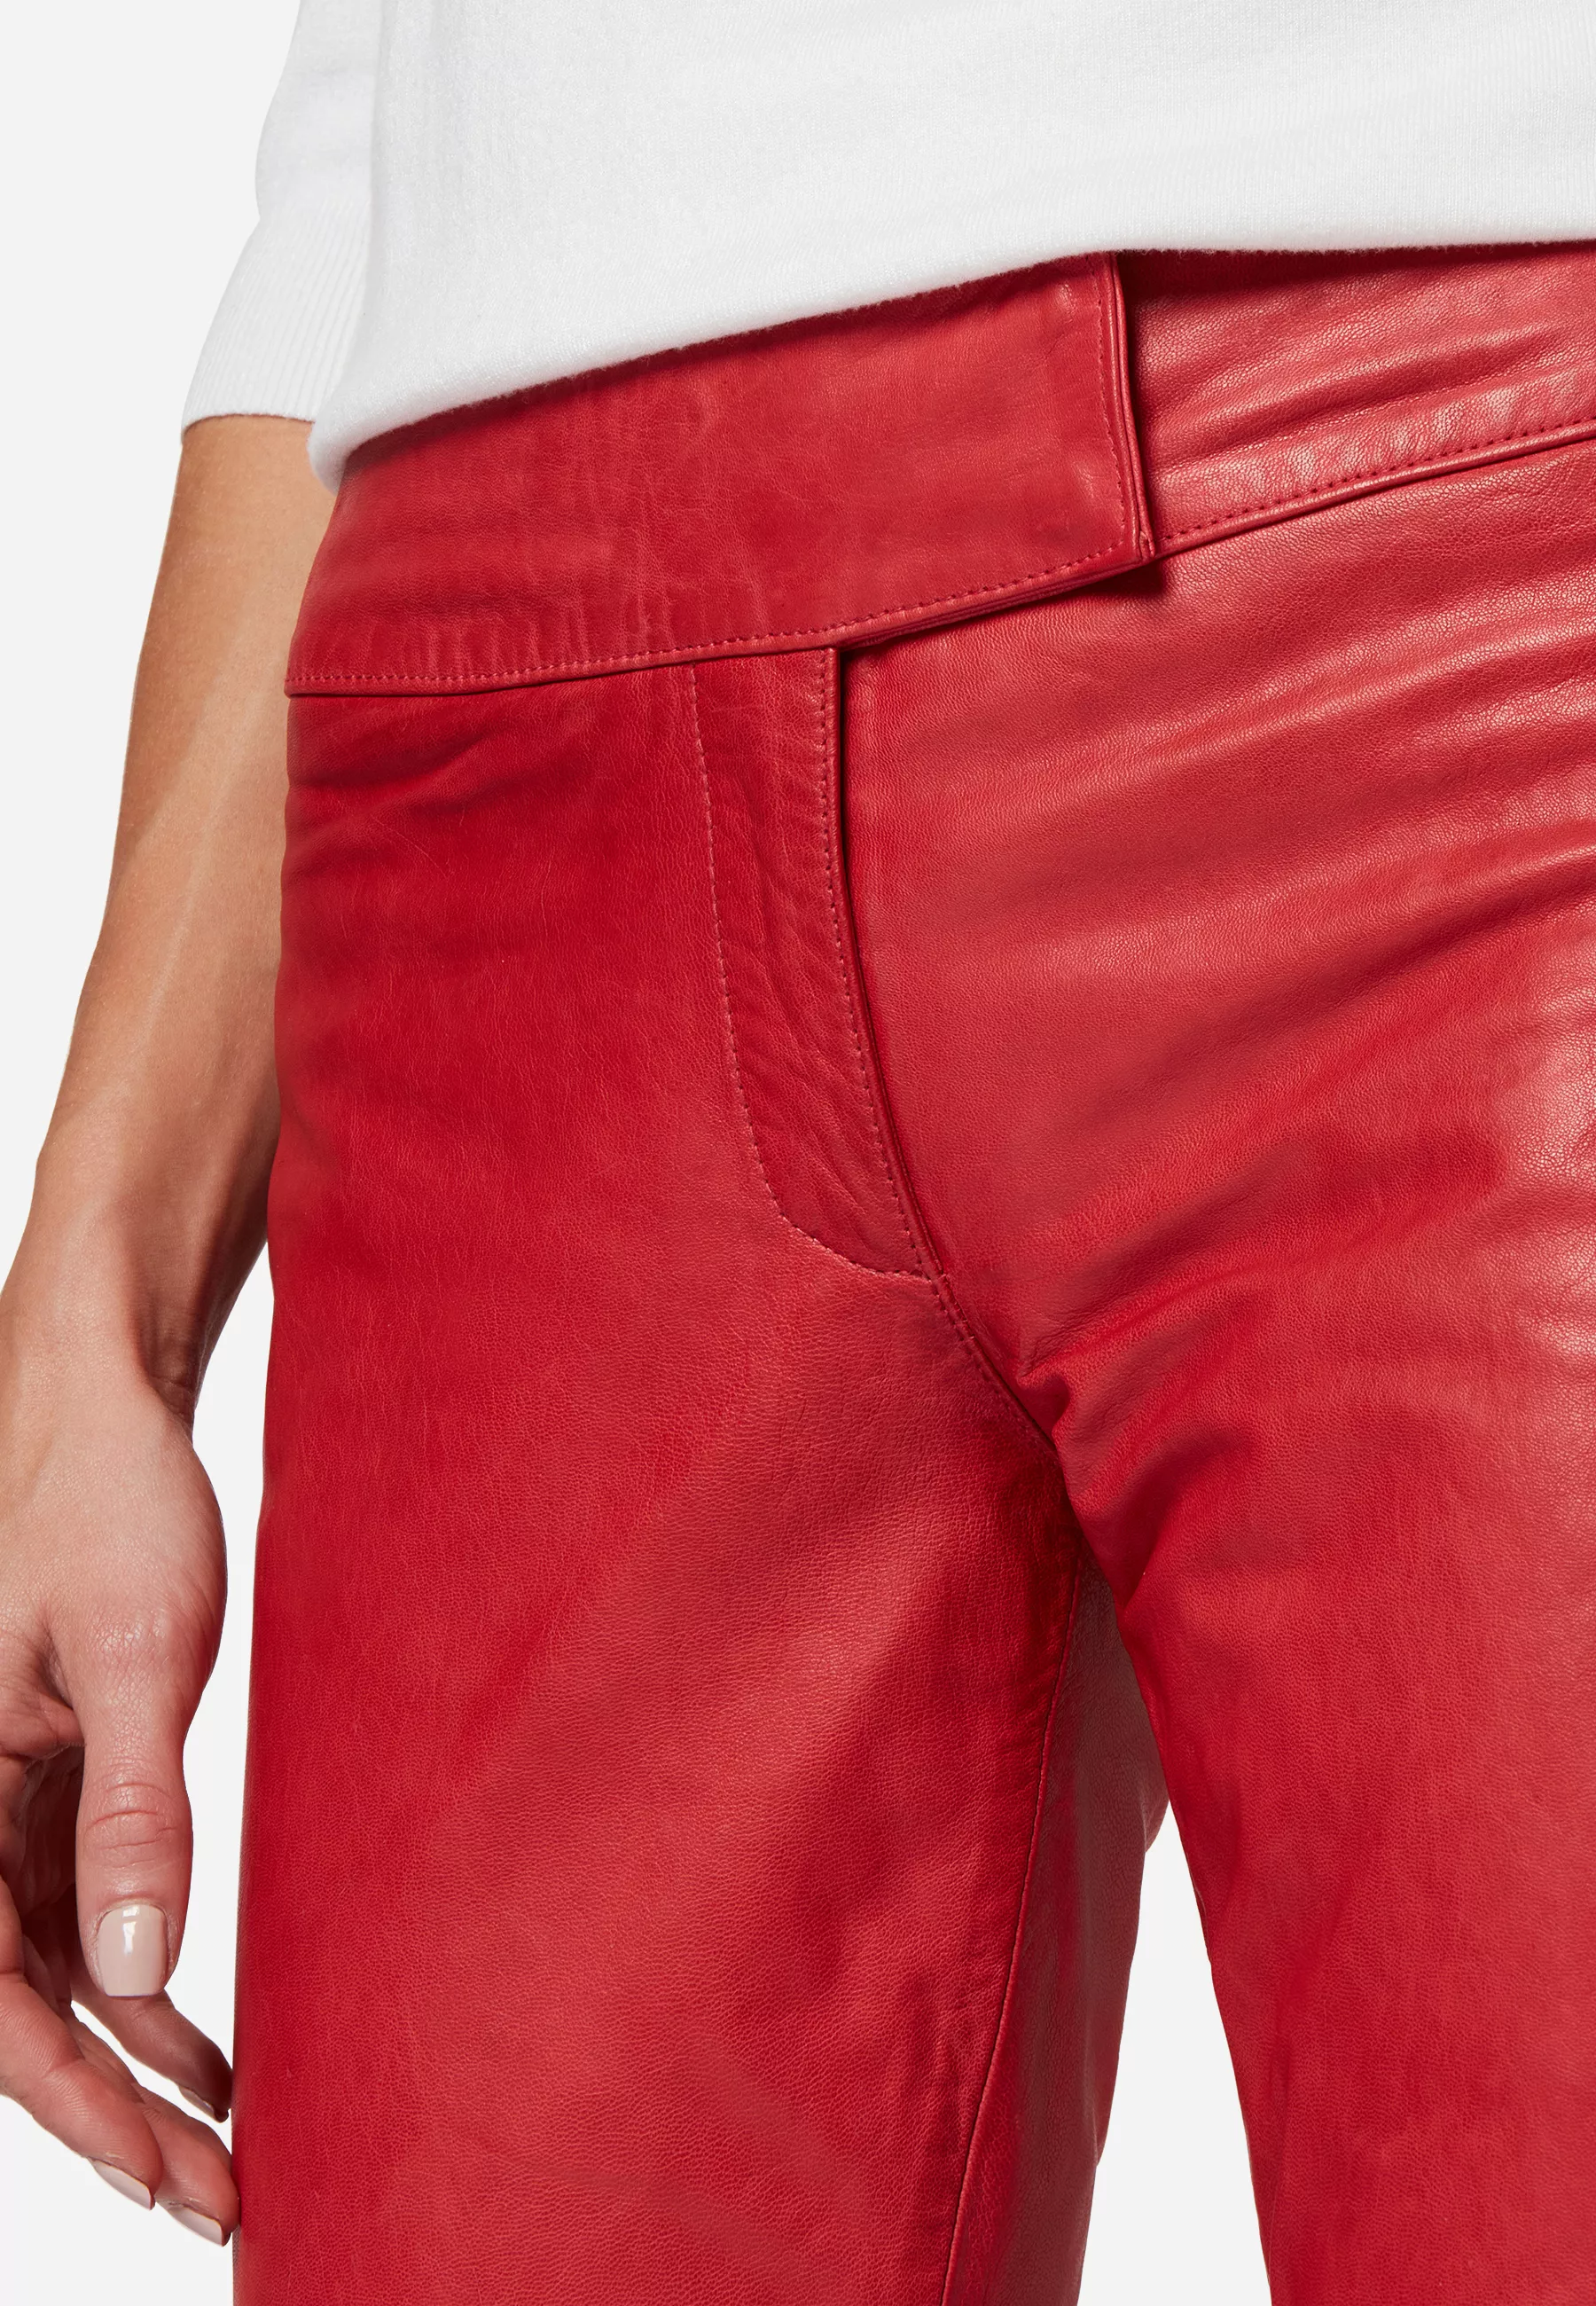 Damen Lederhose Low Cut in Rot von Ricano, Detailansicht Low Cut und Bund vorne am Model